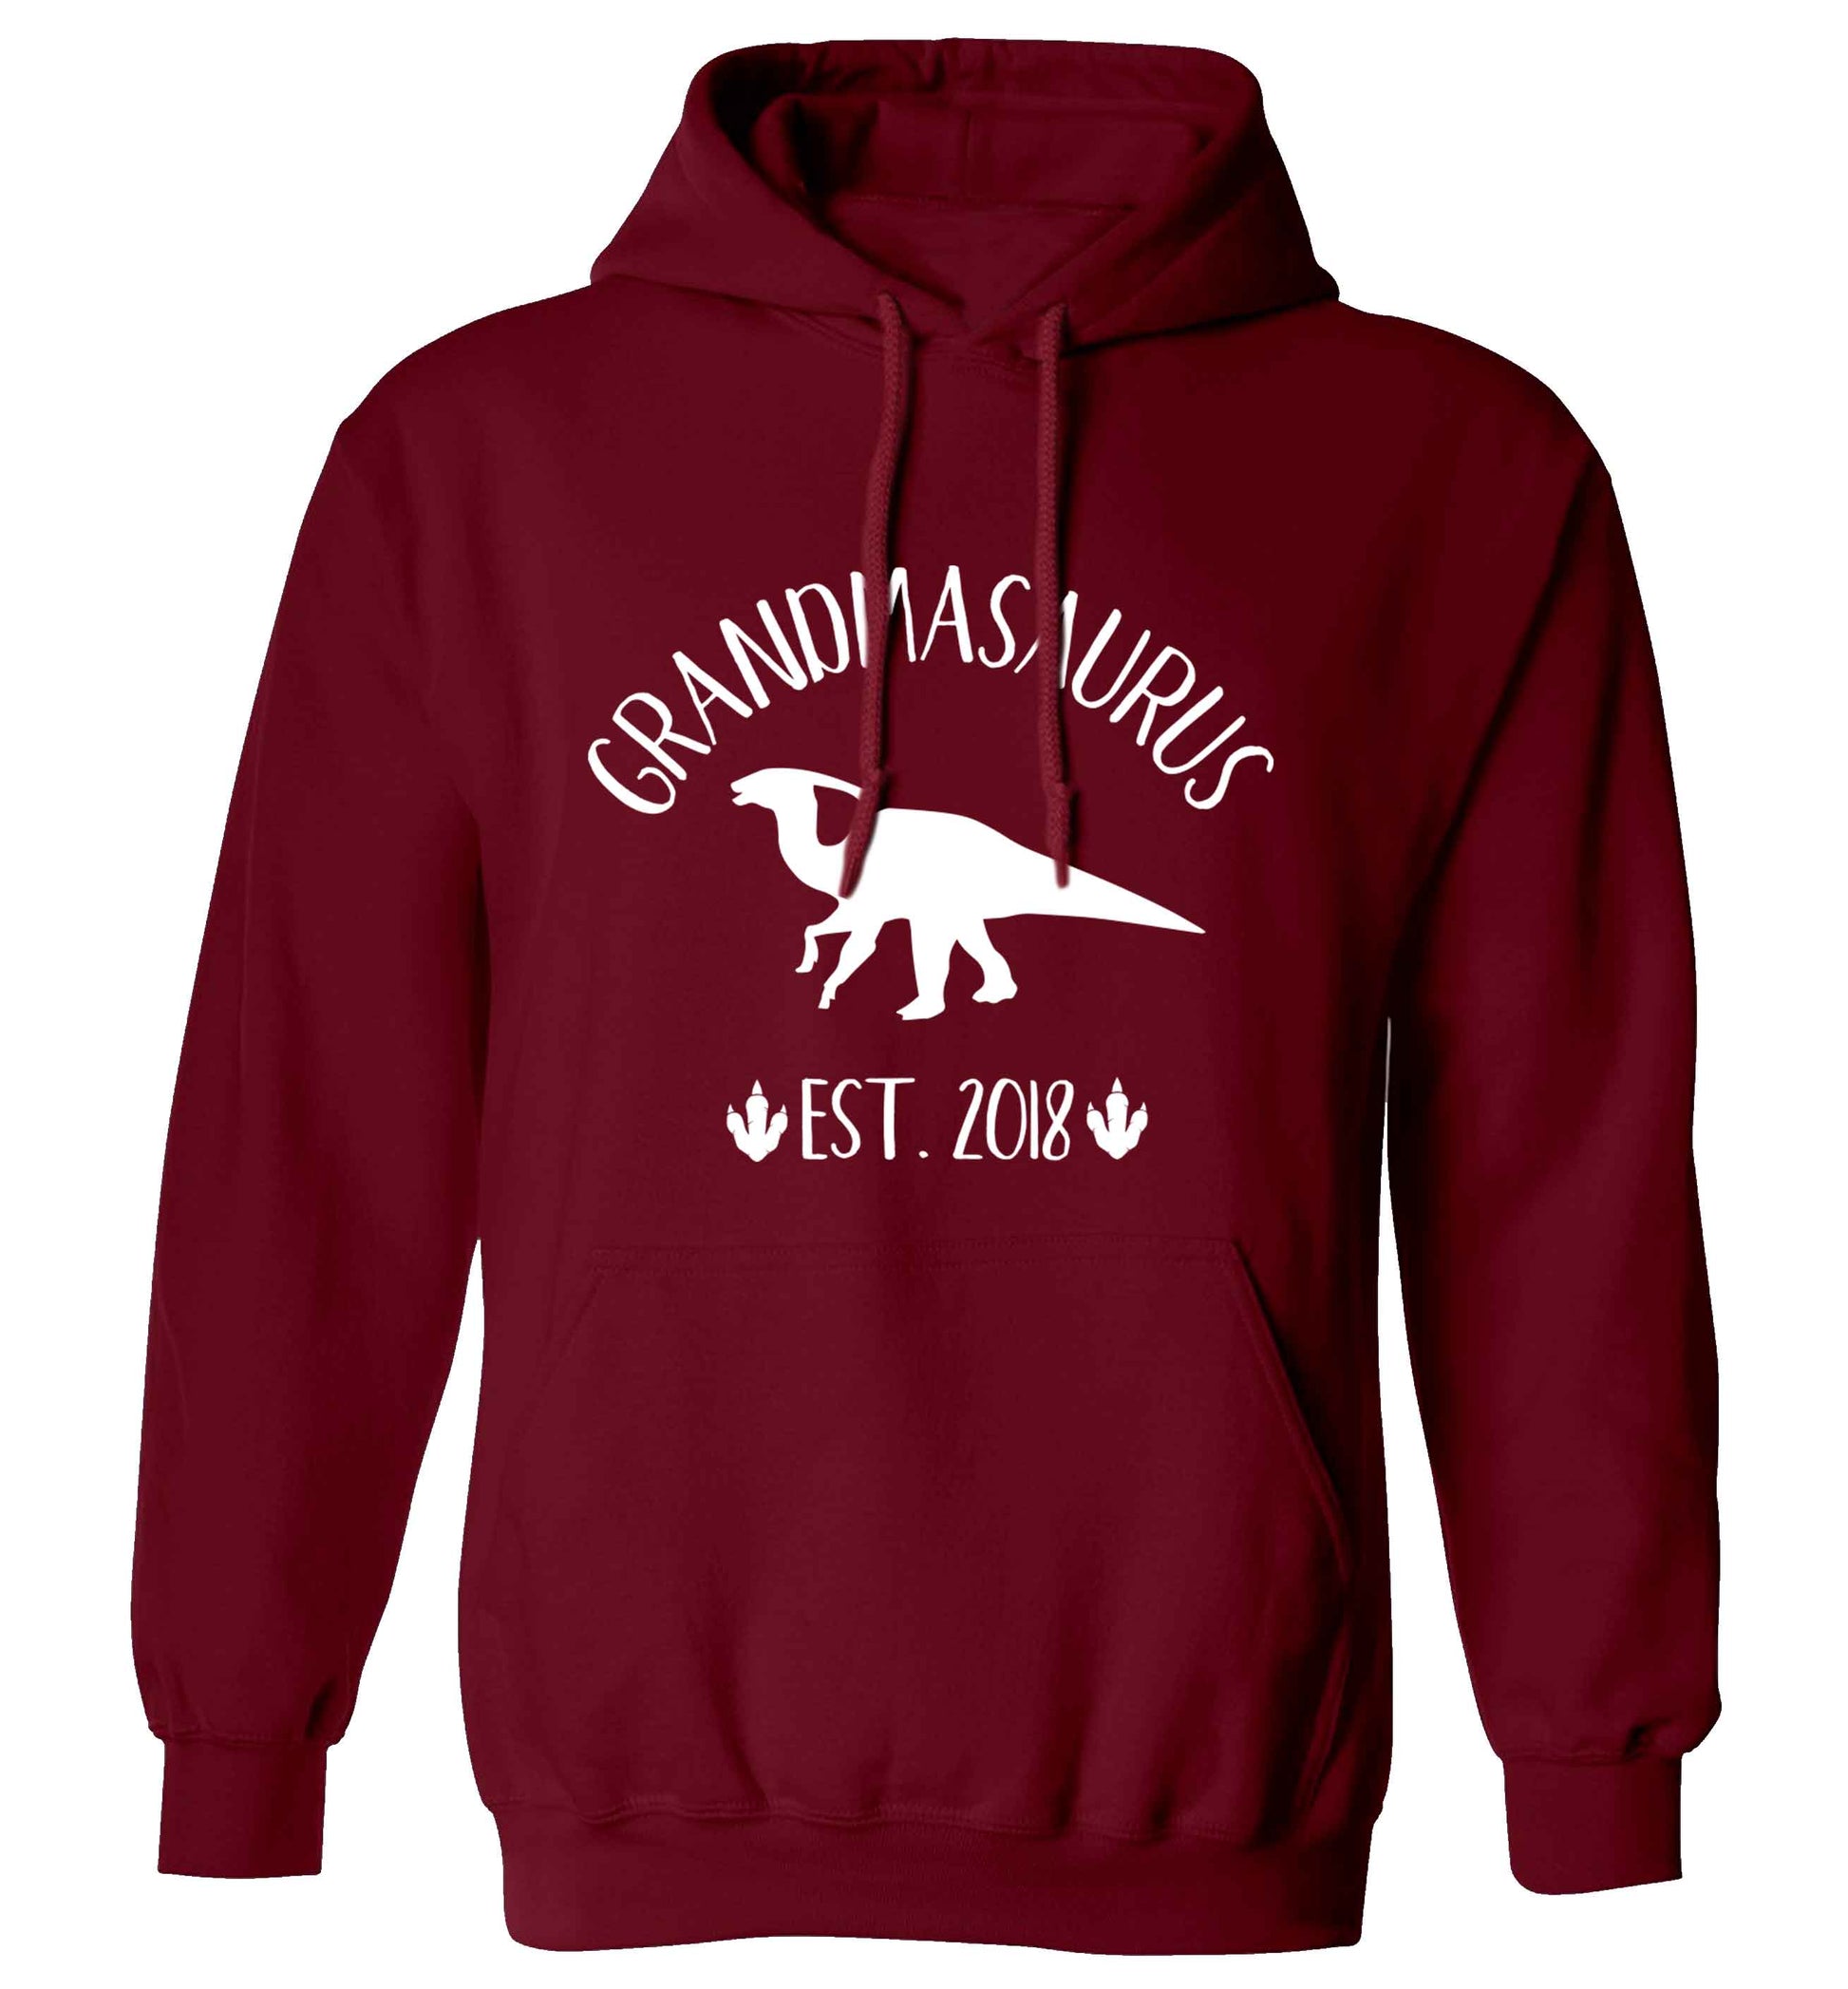 Personalised grandmasaurus since (custom date) adults unisex maroon hoodie 2XL